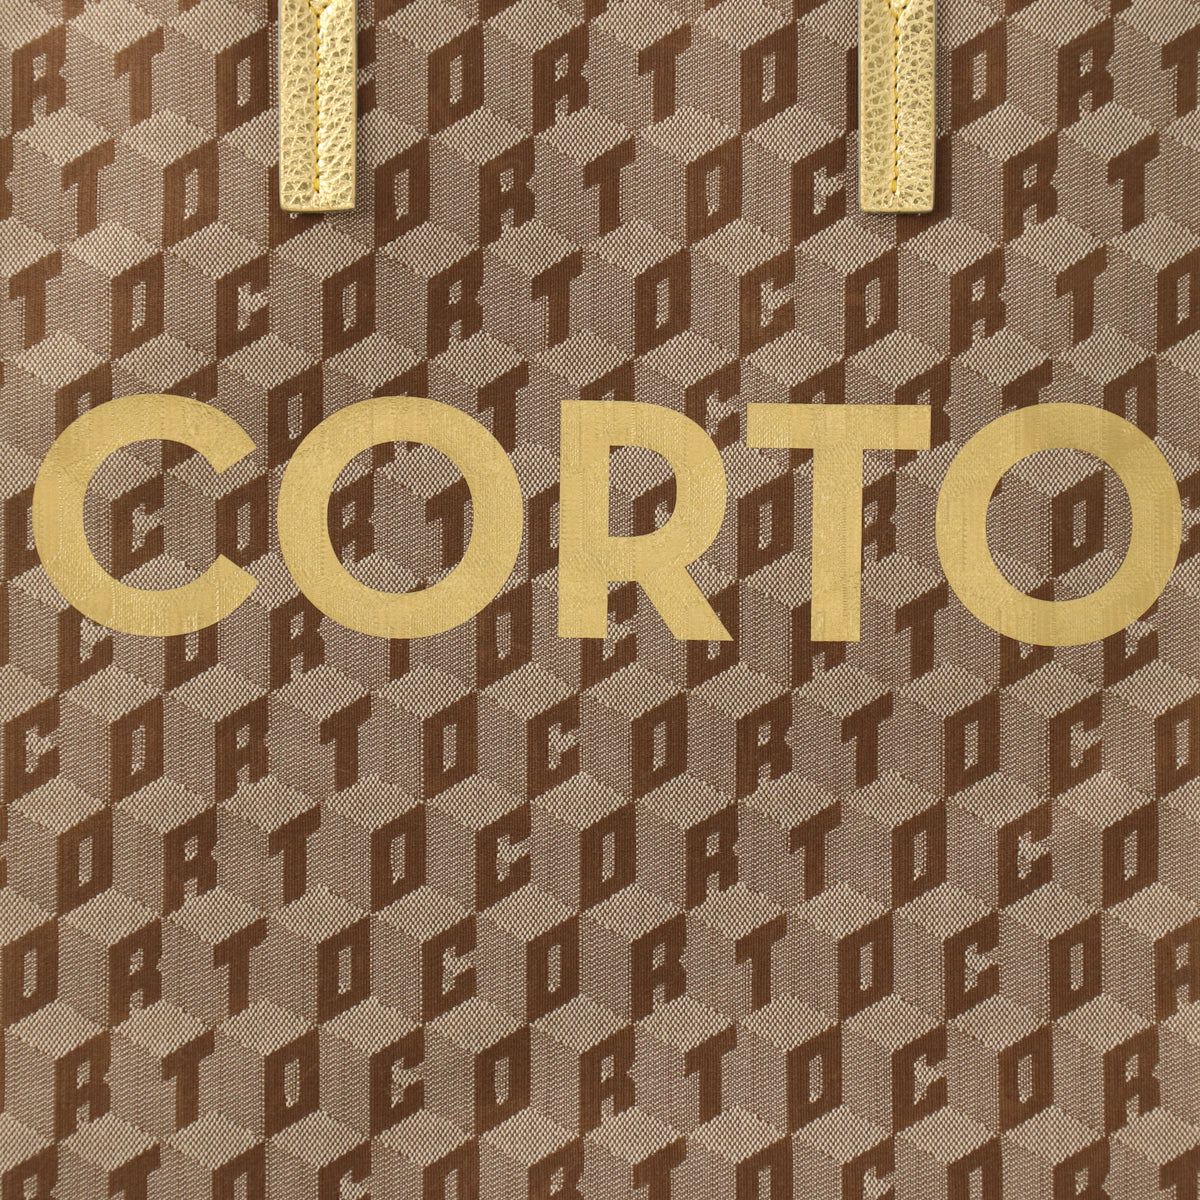 SHOPPER TOTE CORTO X WINDANDSEA/GOLD – Corto Moltedo